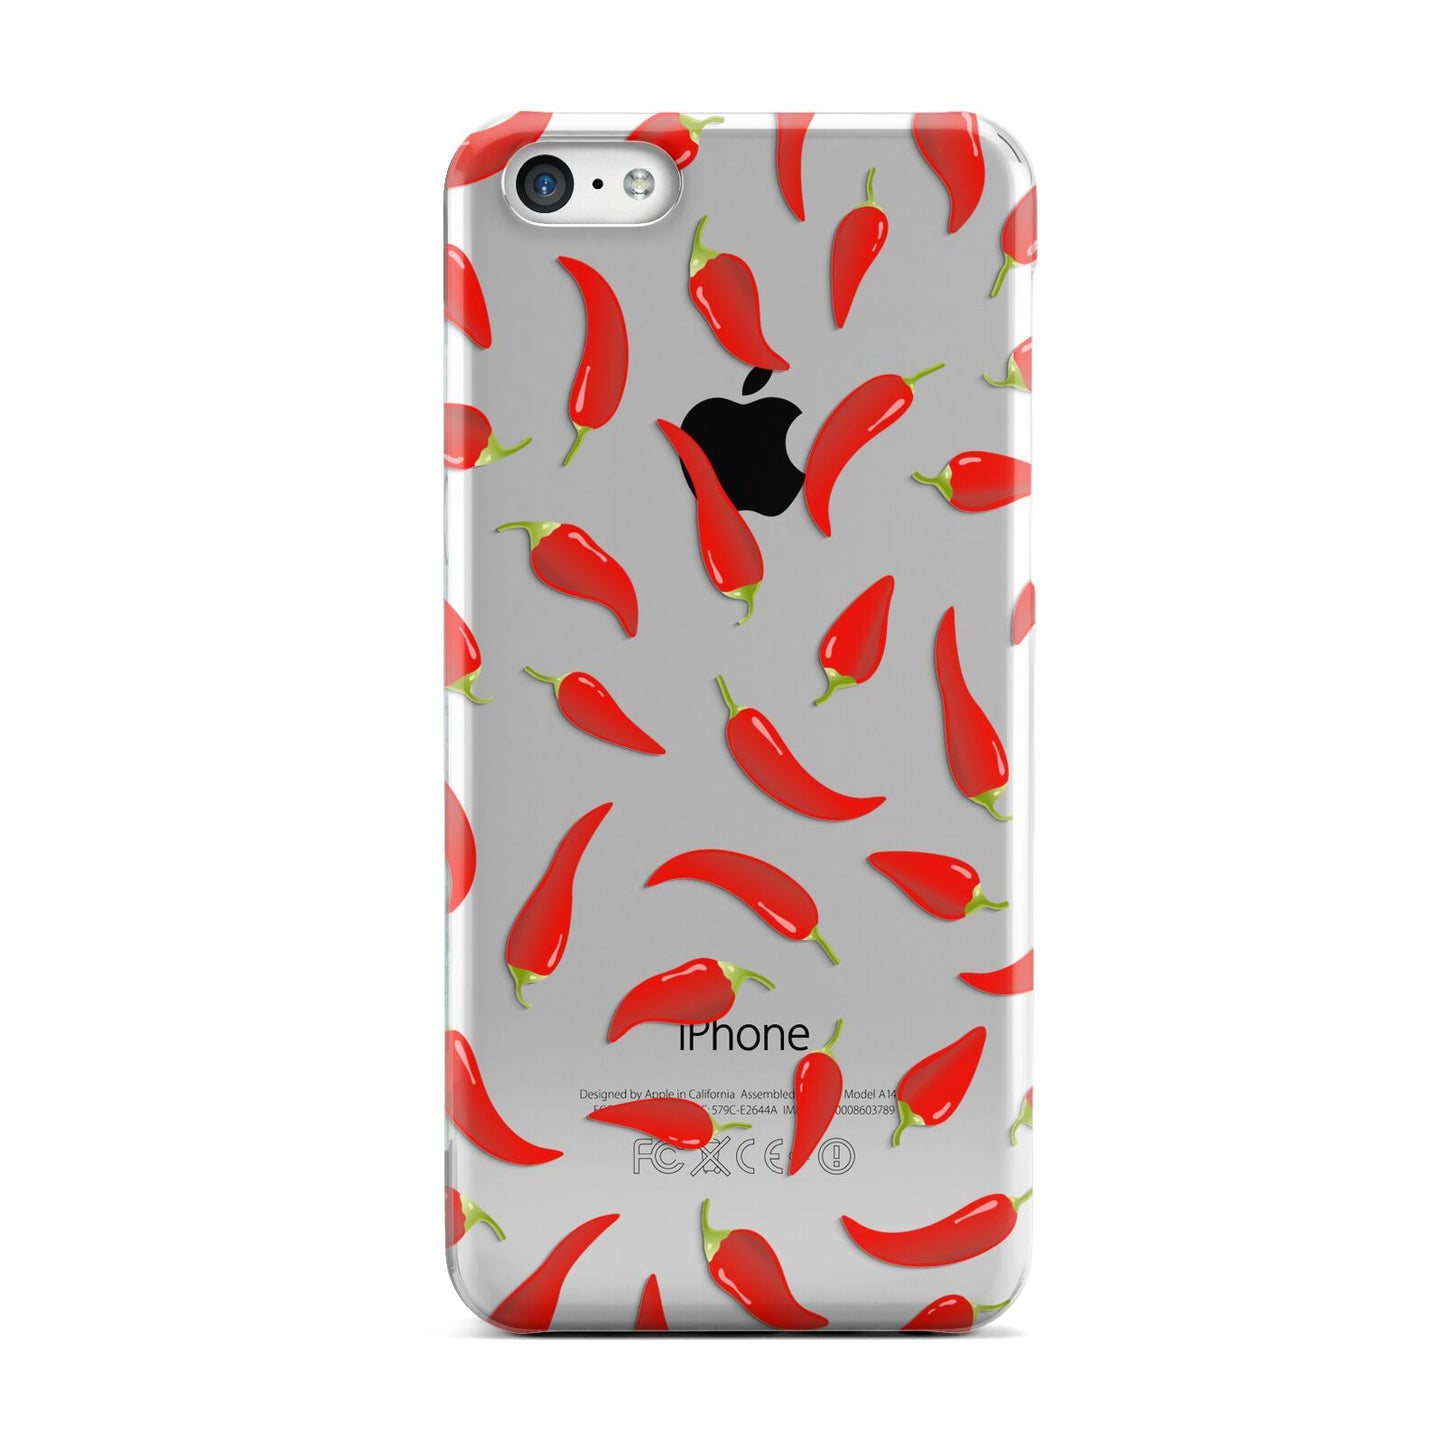 Chilli Pepper Apple iPhone 5c Case